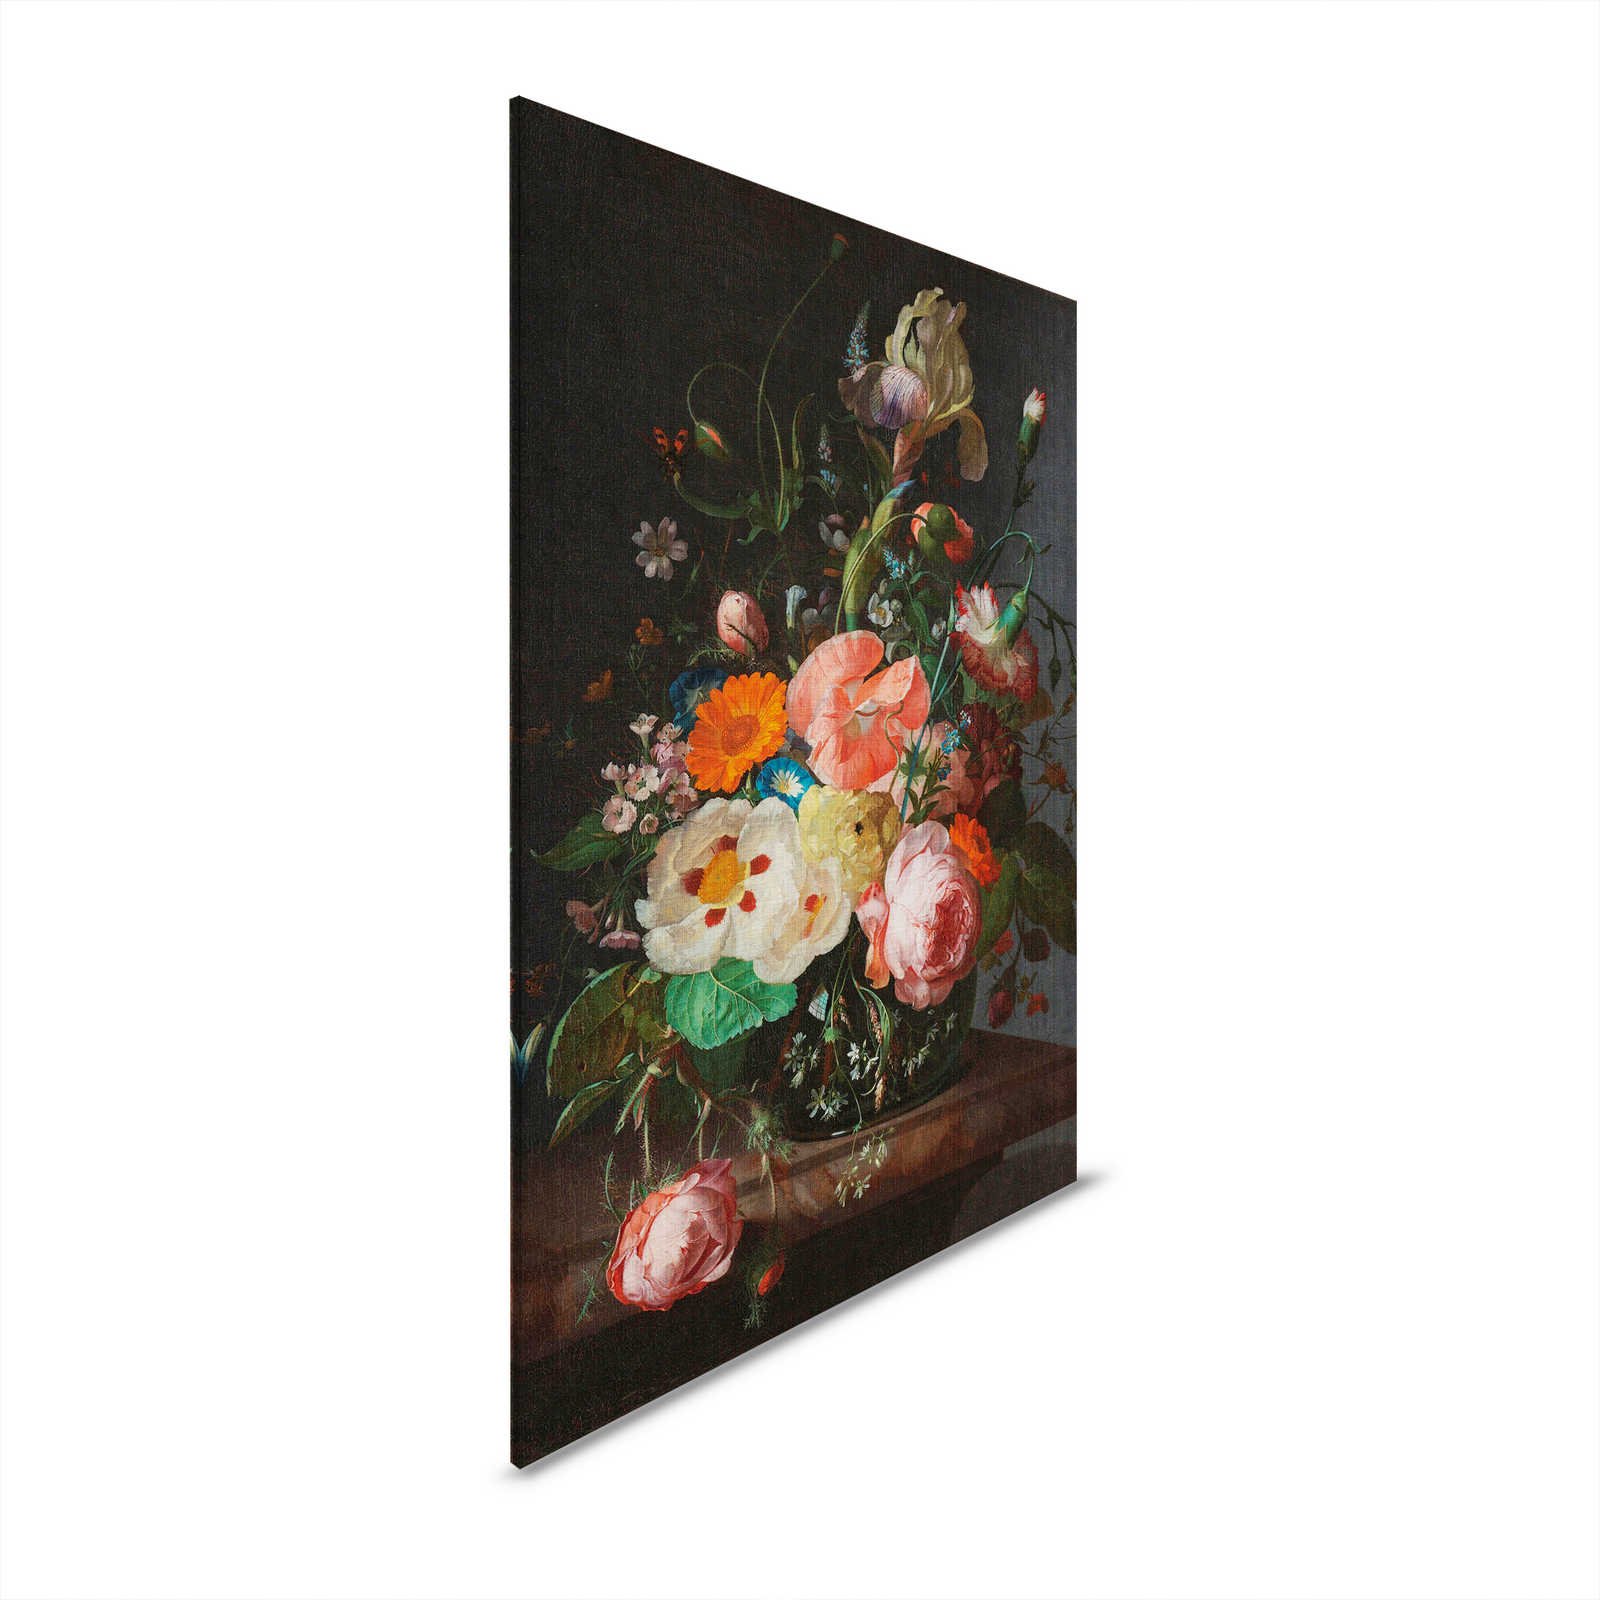 Artists Studio 3 - Blumen Leinwandbild Gemälde Stillleben – 0,80 m x 1,20 m
